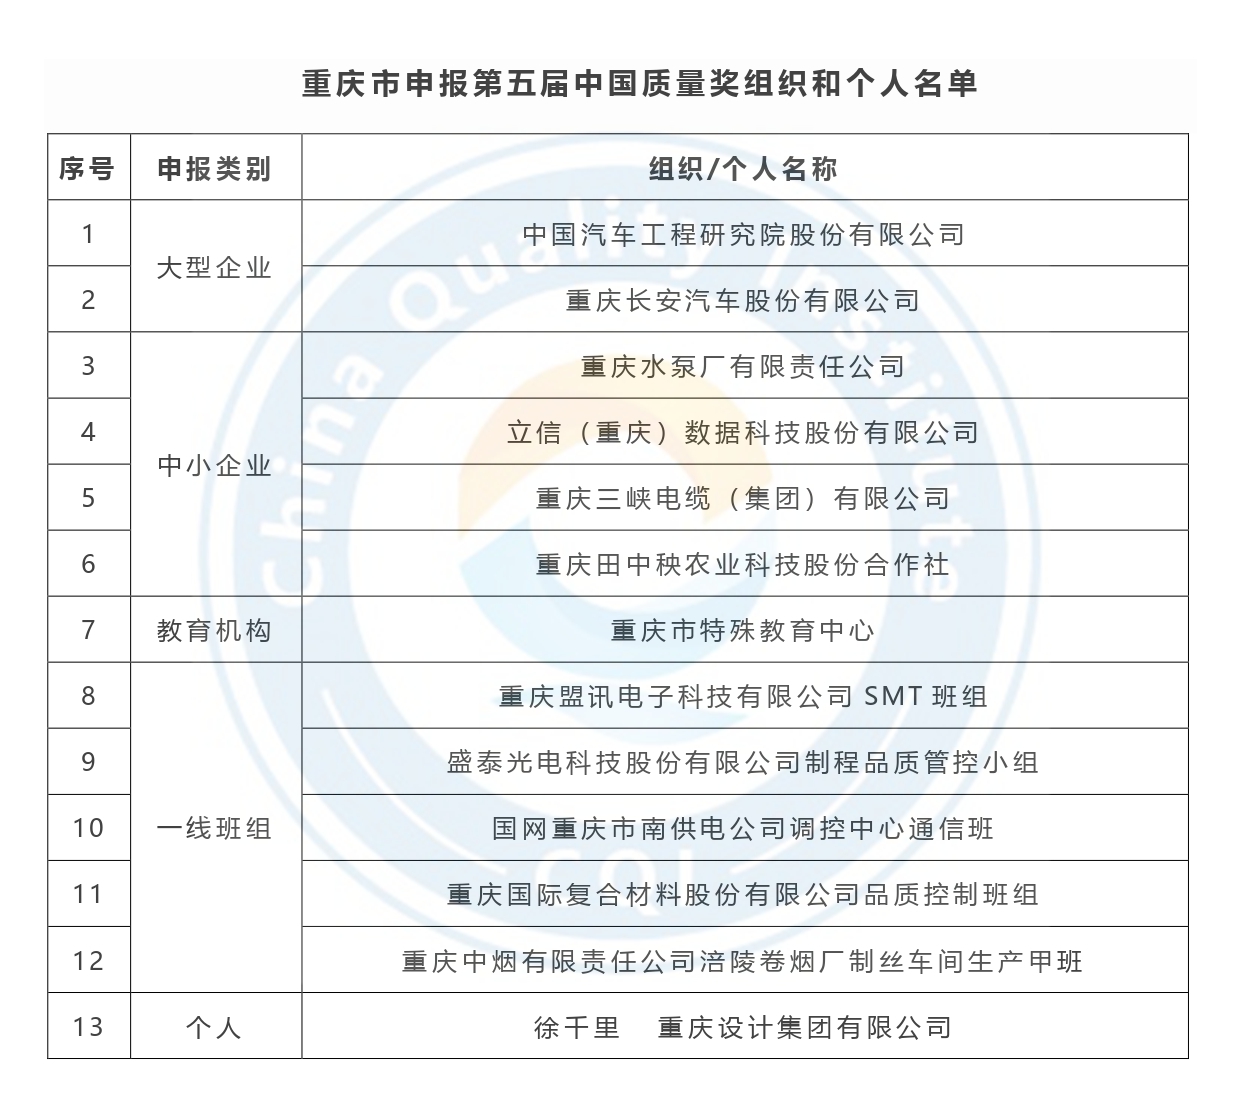 第五届中国质量奖申报名单公示-重庆市.jpg